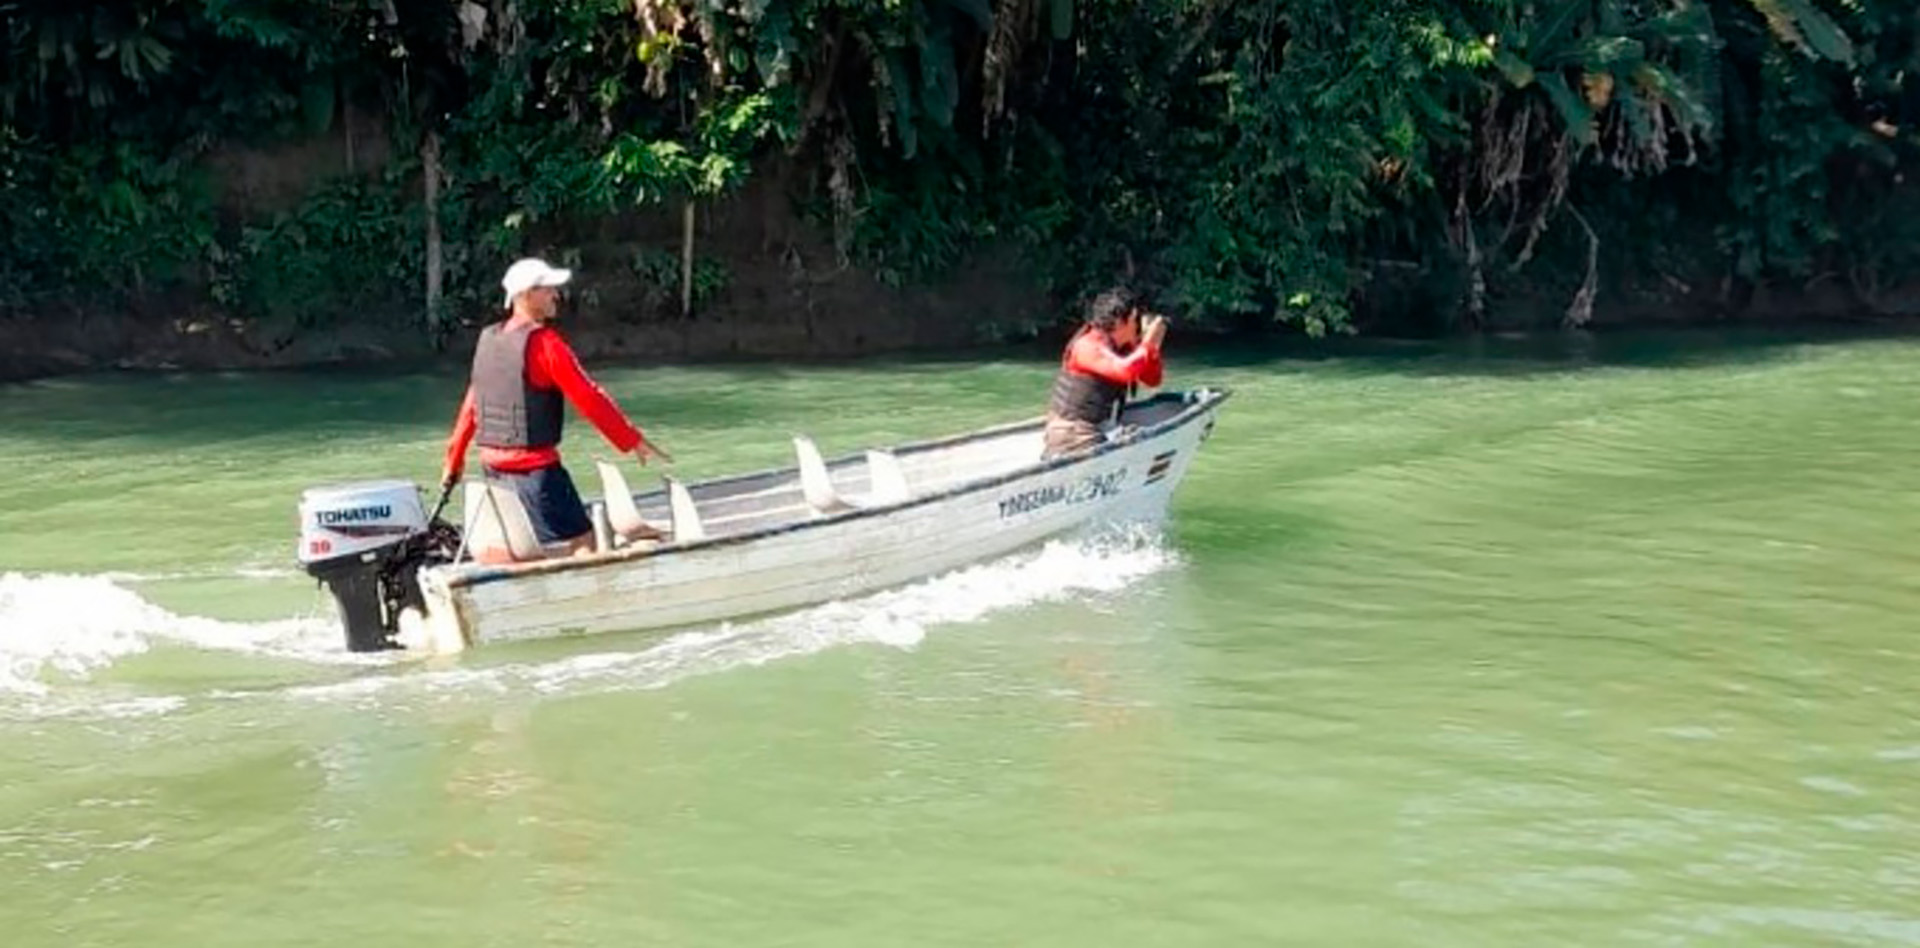 Rescatistas de la Cruz Roja de Costa Rica patrullaron ínfructuosamente el río en busca del cuerpo del niño atacado. 